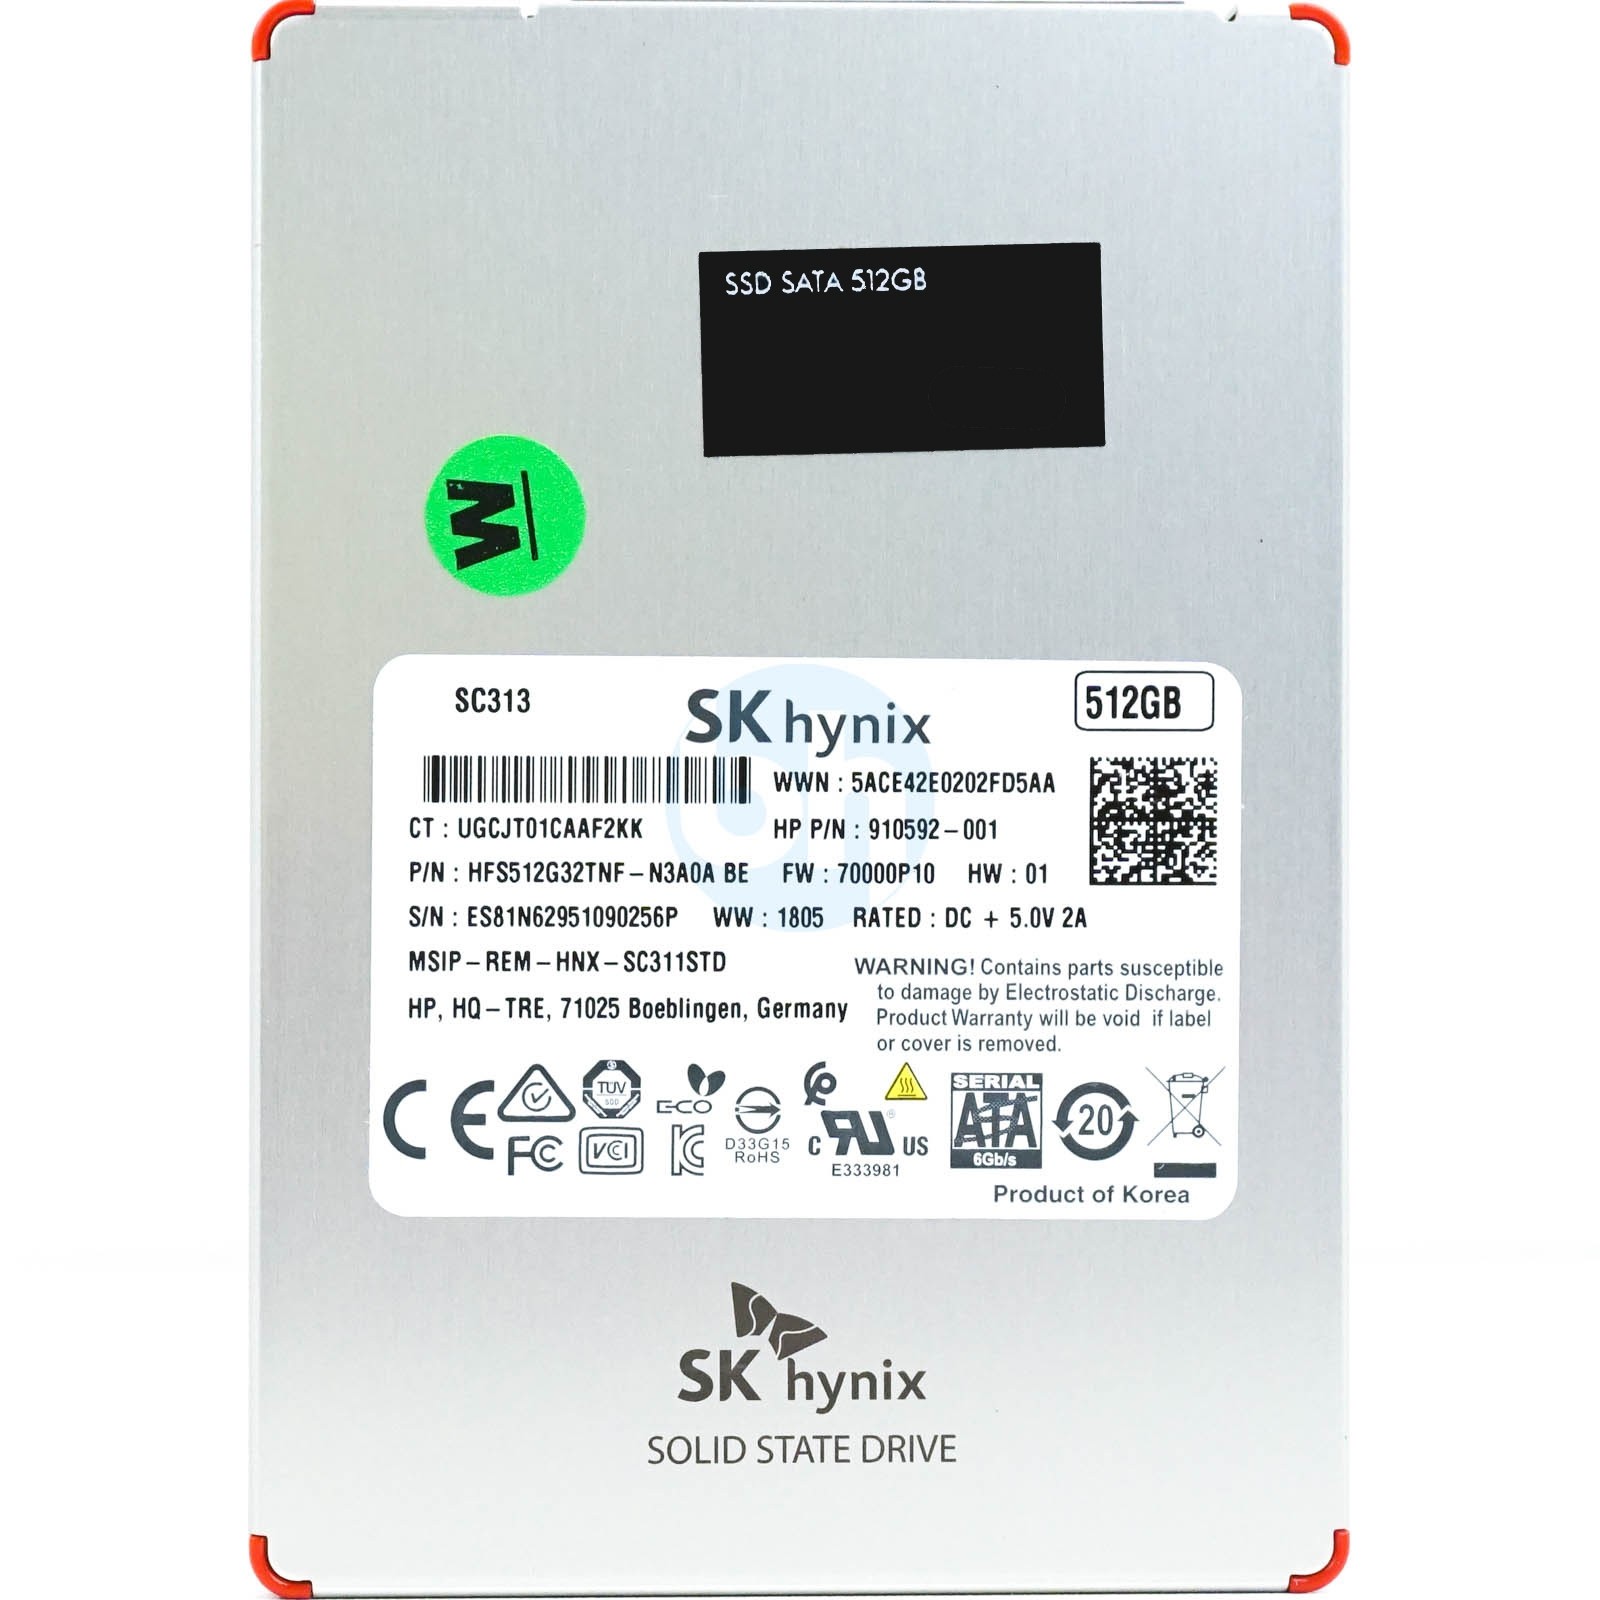 HP (910592-001) - 512GB (SFF 2.5in) SATA-III 6Gbps SSD (721393-001)